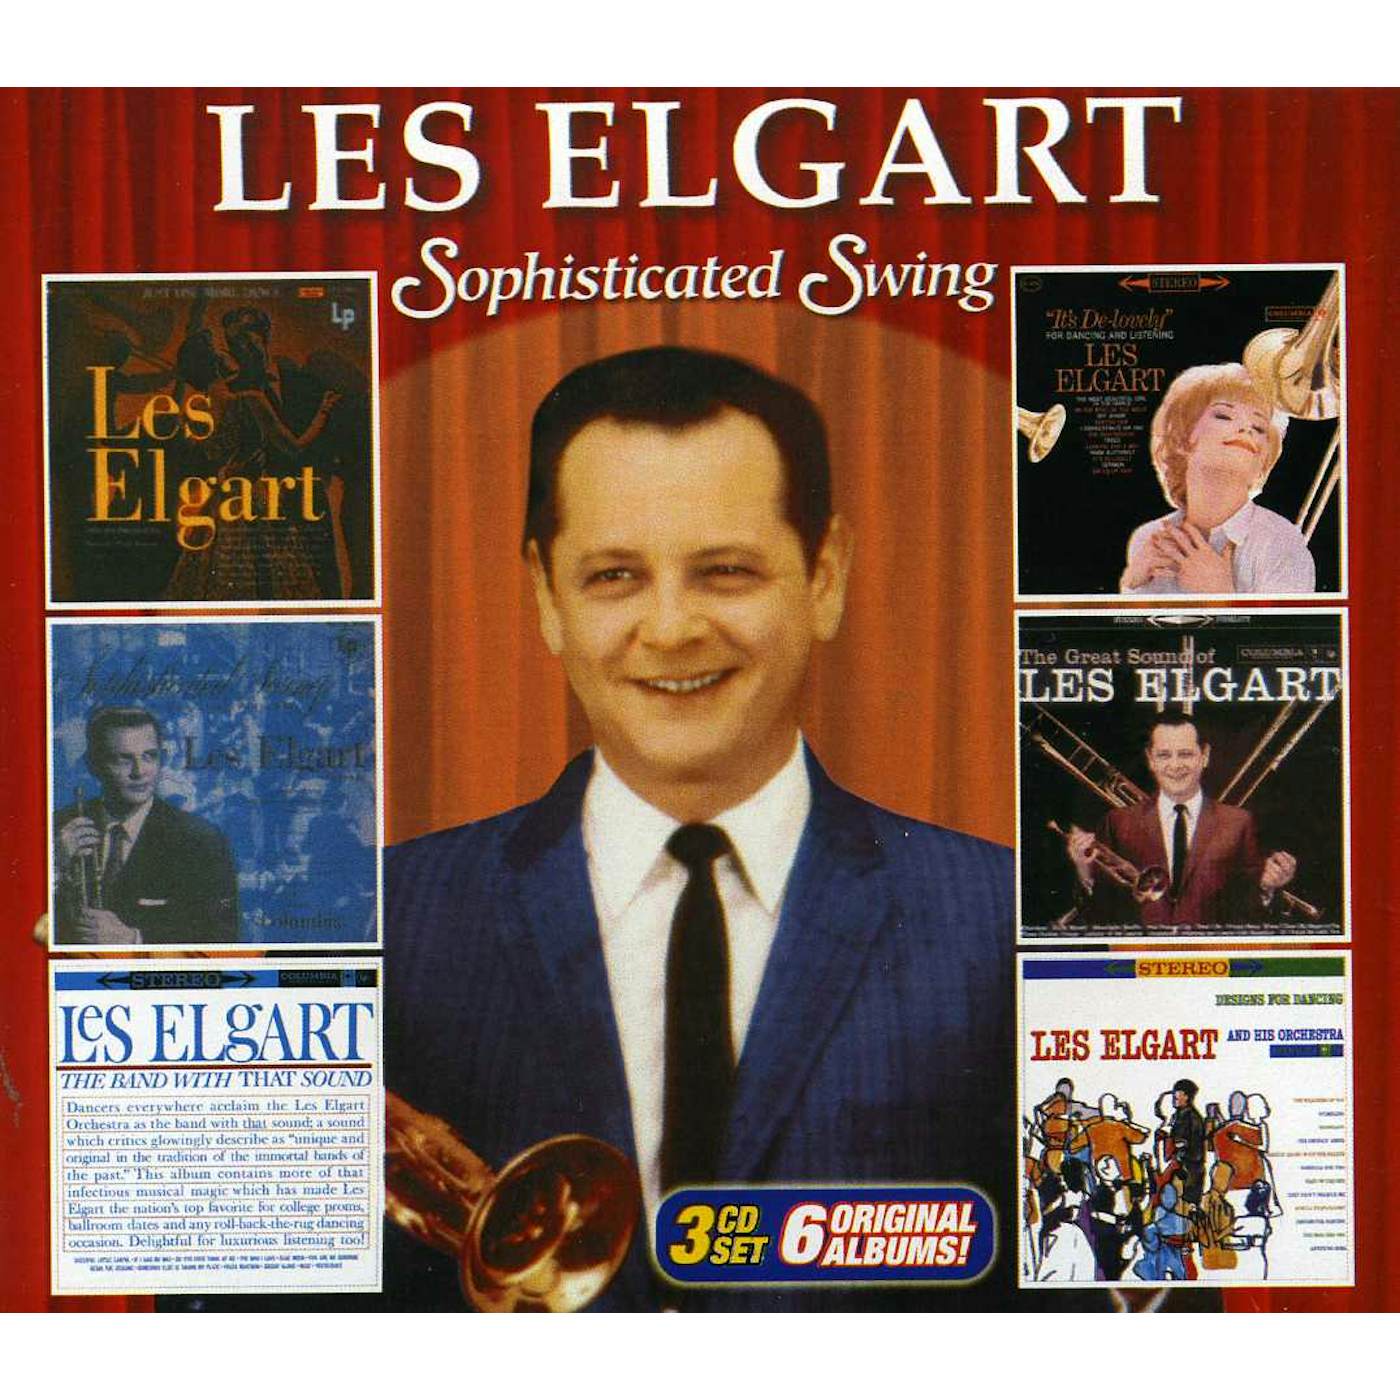 Les Elgart SOPHISTICATED SWING CD